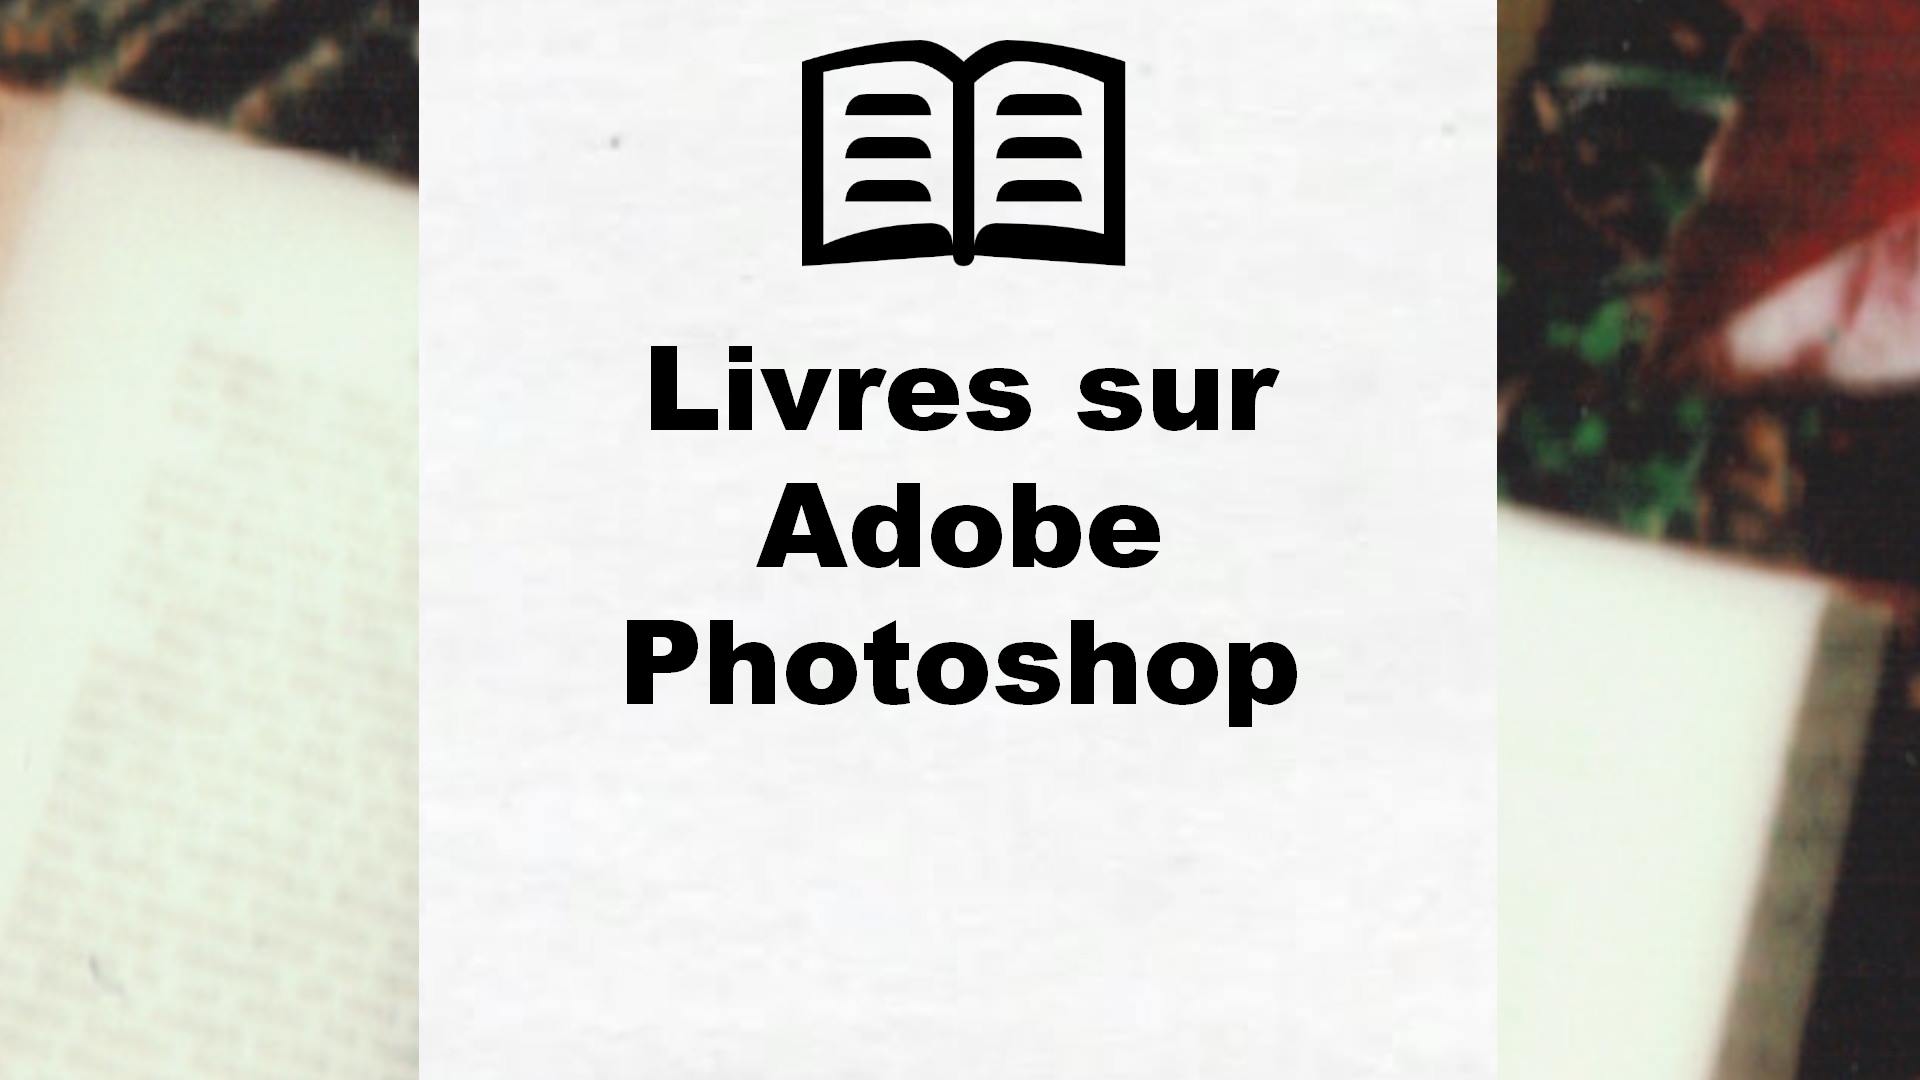 Livres sur Adobe Photoshop